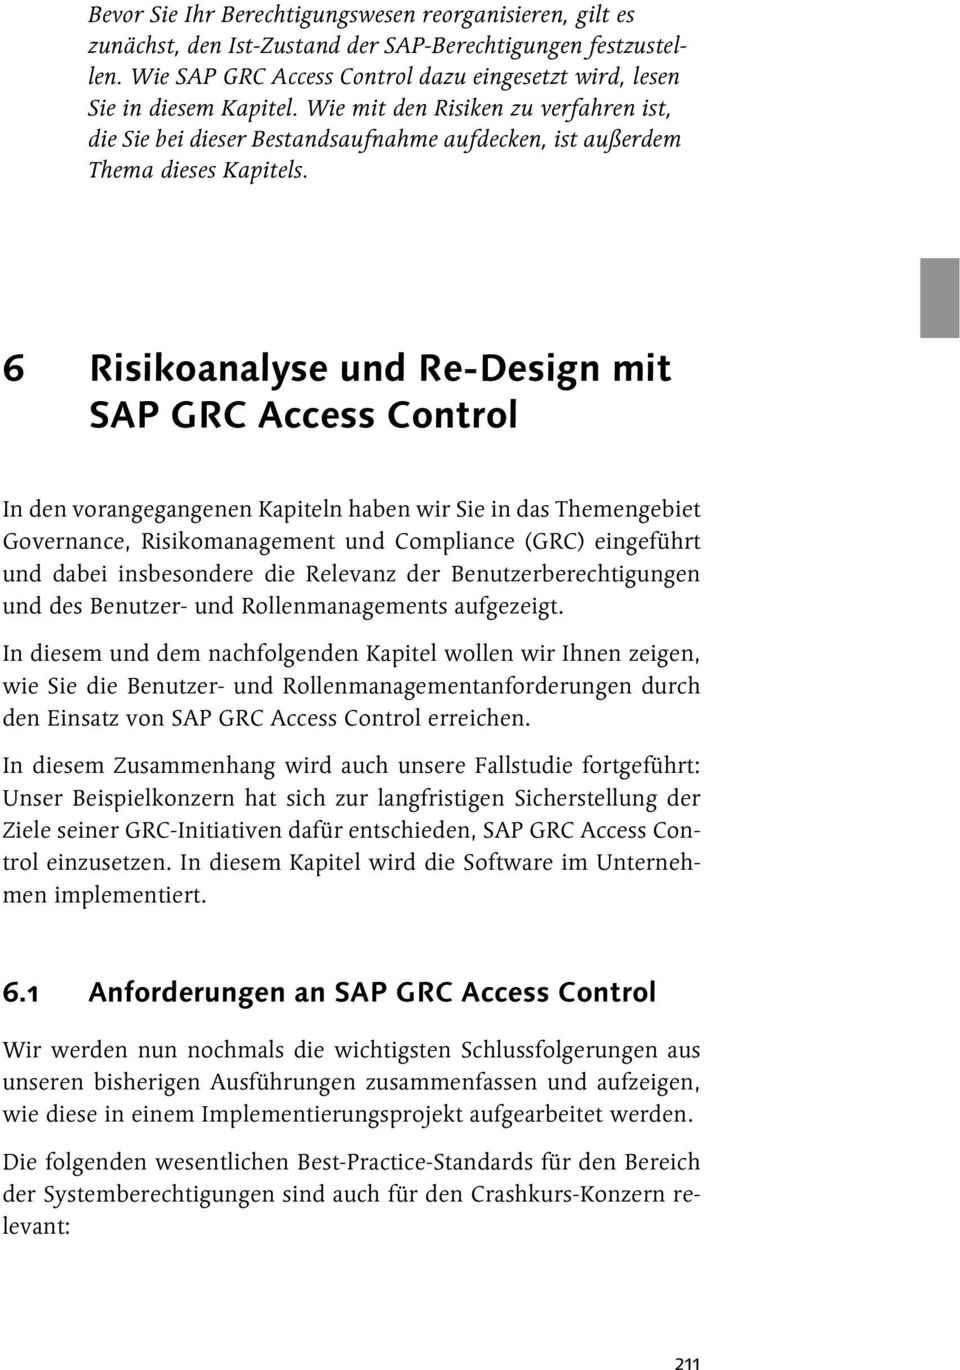 6 Risikoanalyse und Re-Design mit SAP GRC Access Control In den vorangegangenen Kapiteln haben wir Sie in das Themengebiet Governance, Risikomanagement und Compliance (GRC) eingeführt und dabei